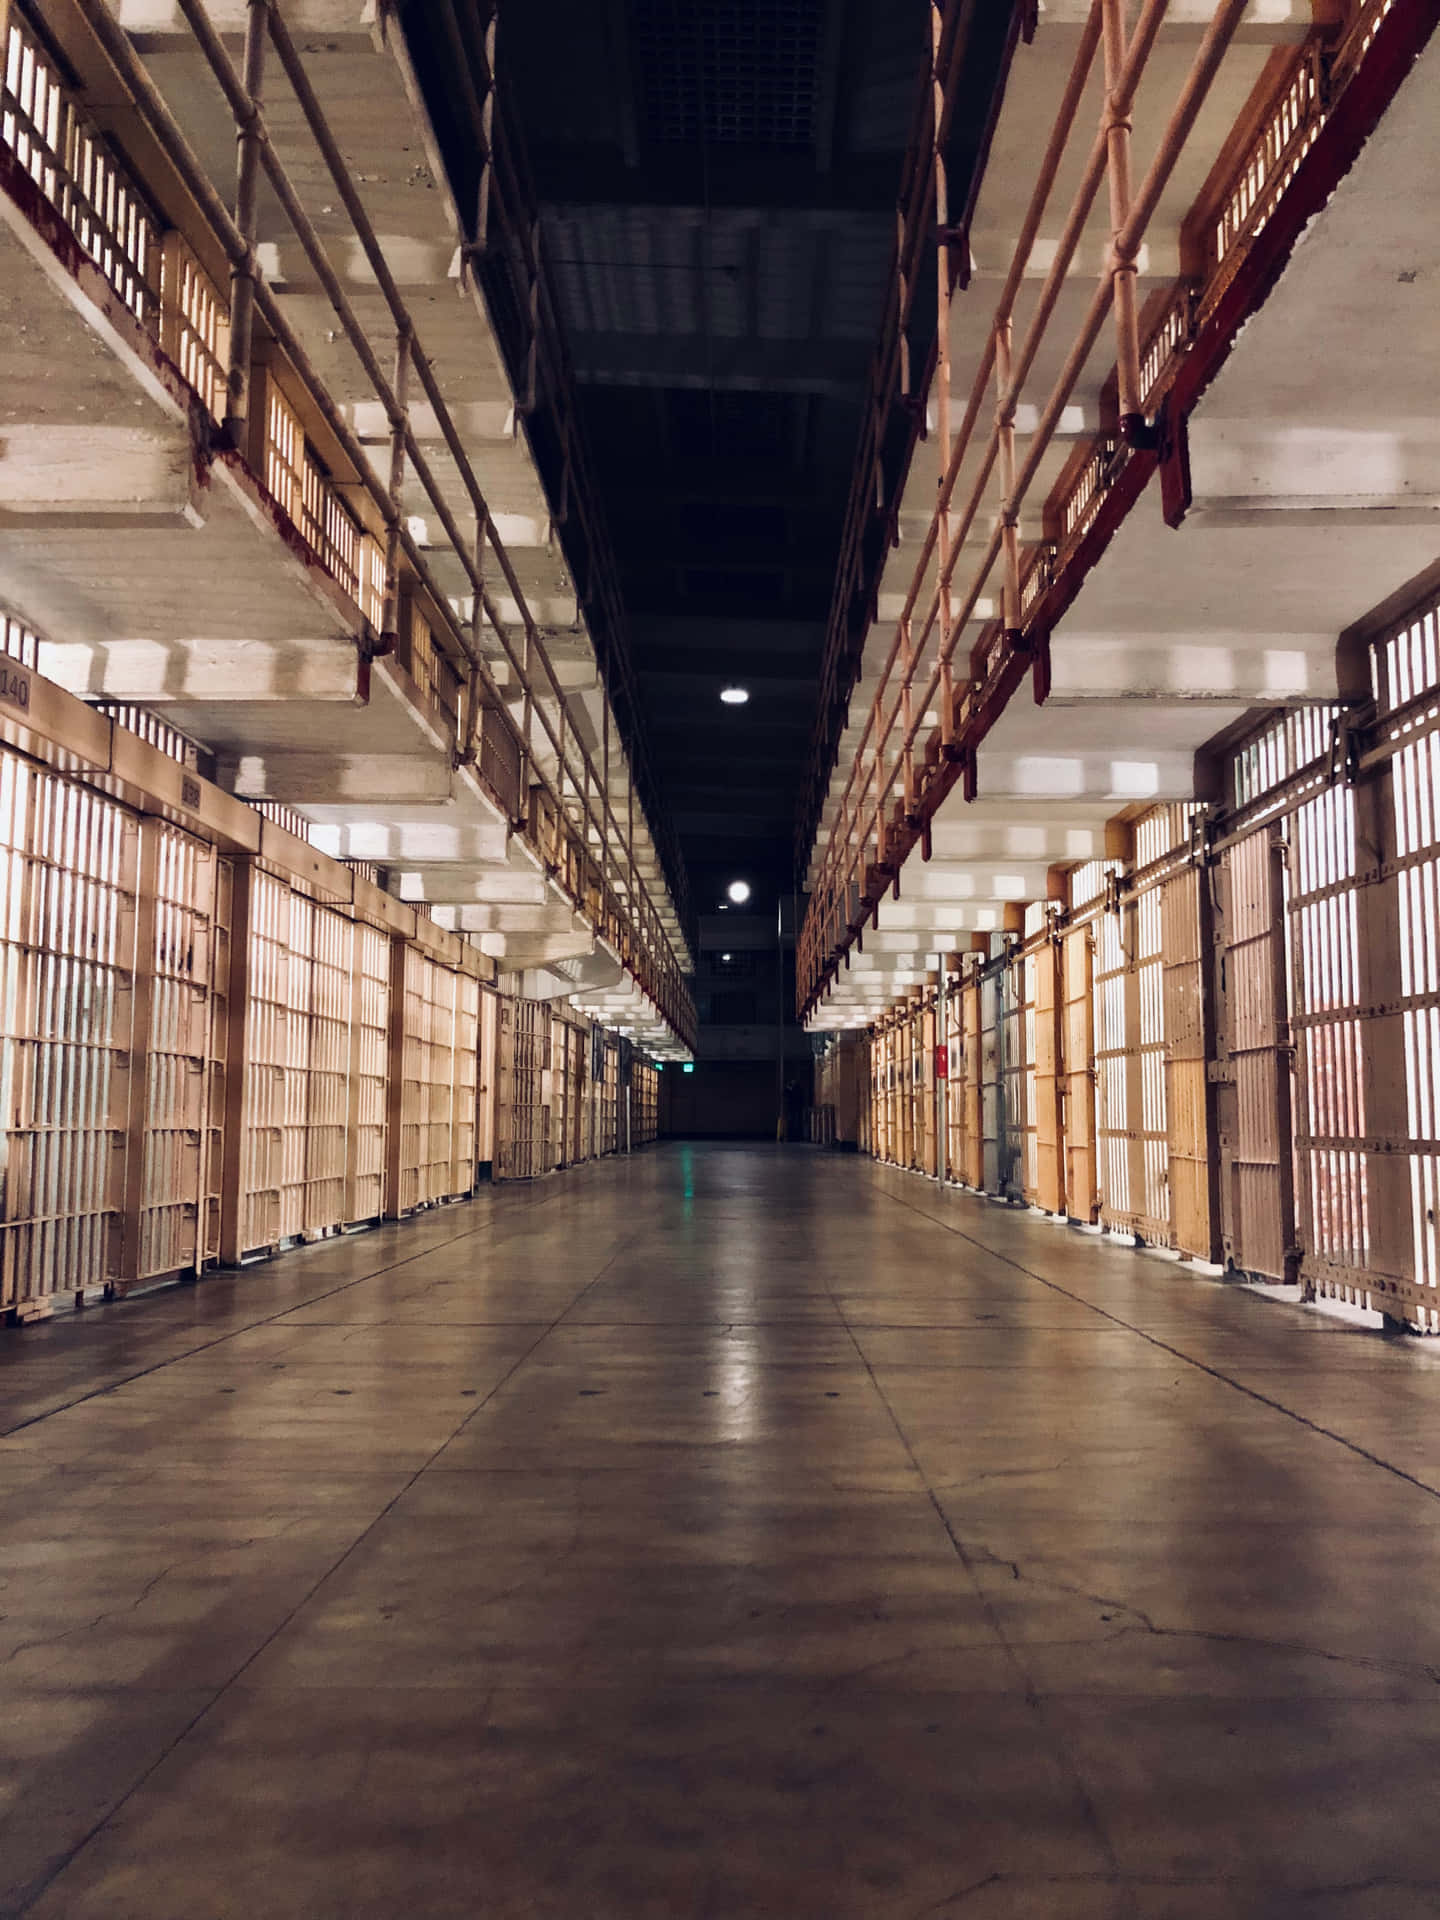 Anordnungvon Gefängniszellen Hintergrund Einer Gefängniszelle